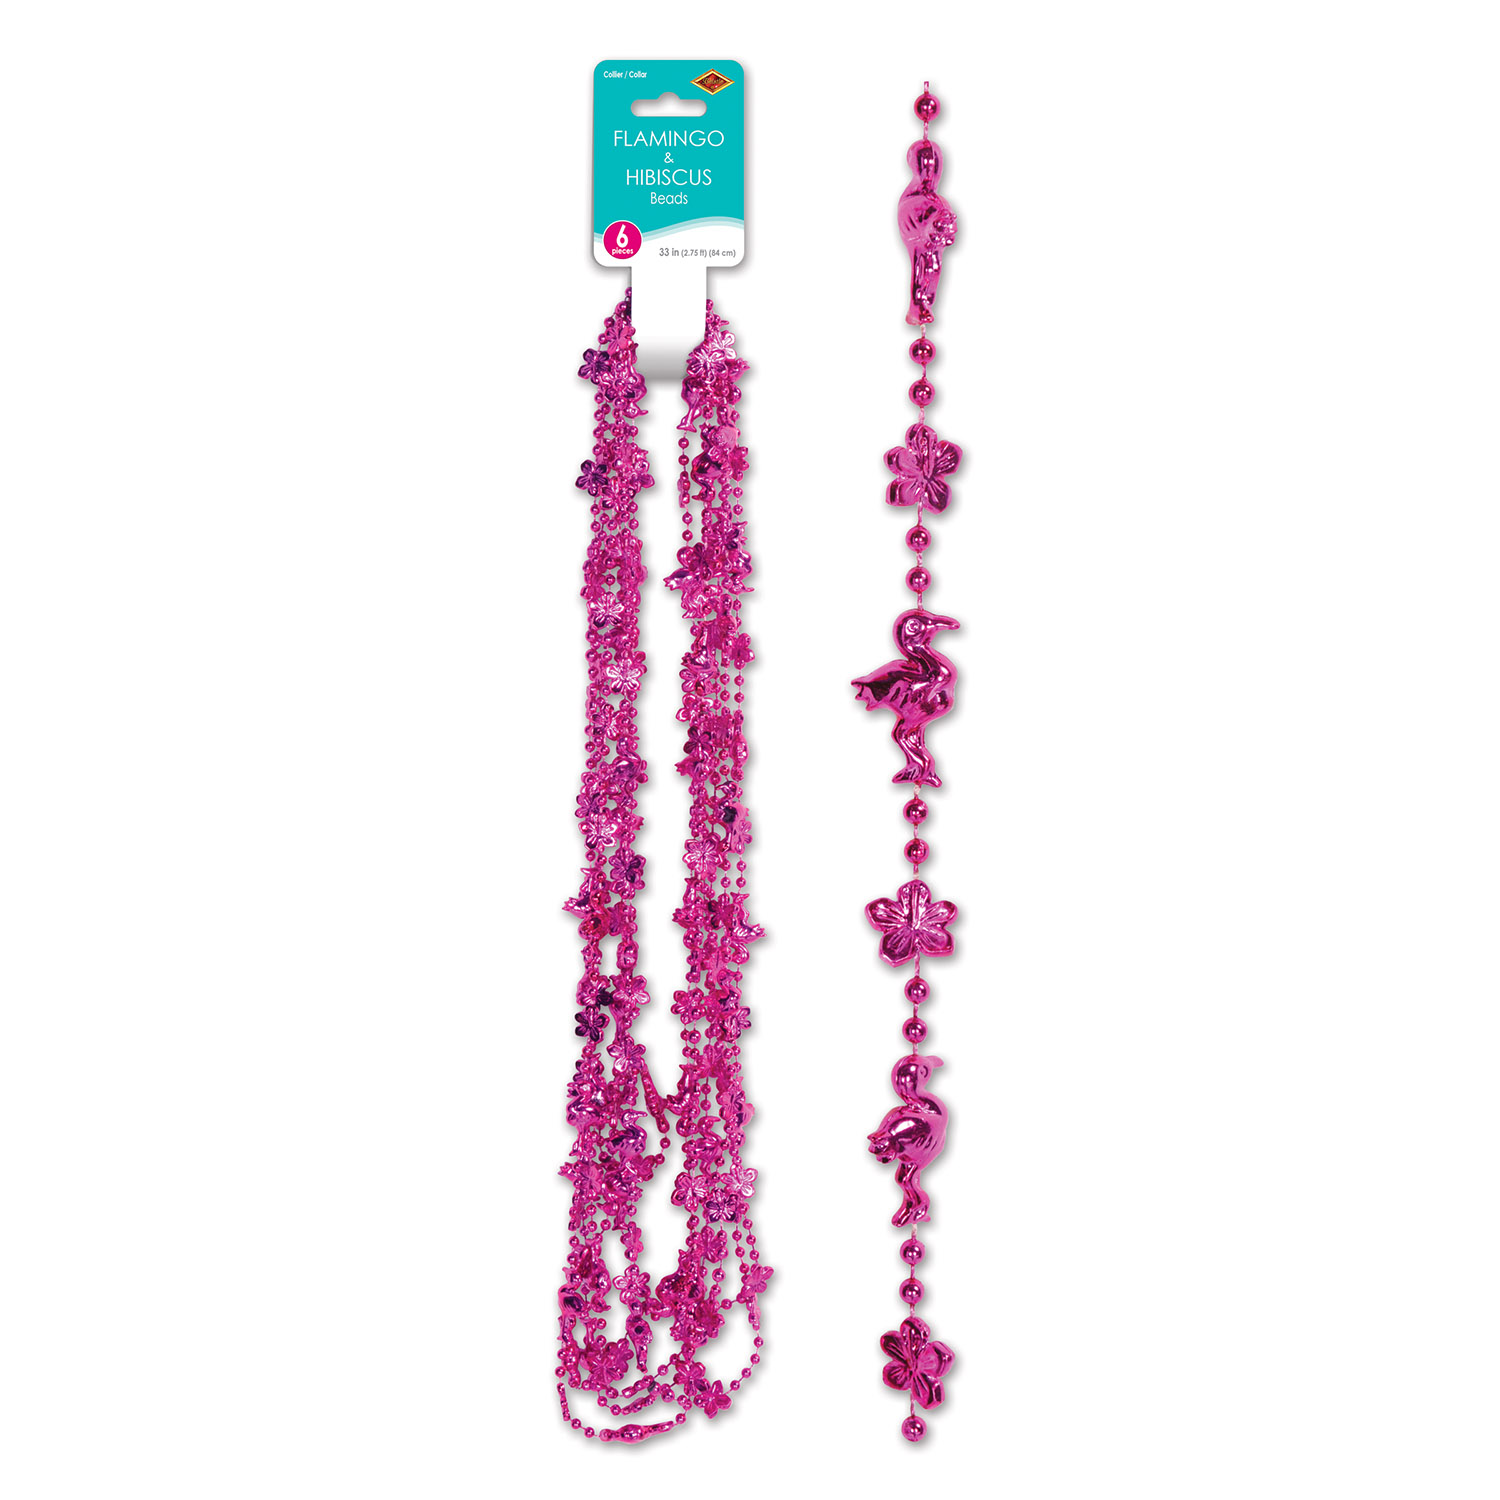 12 Wholesale Flamingo & Hibiscus Beads